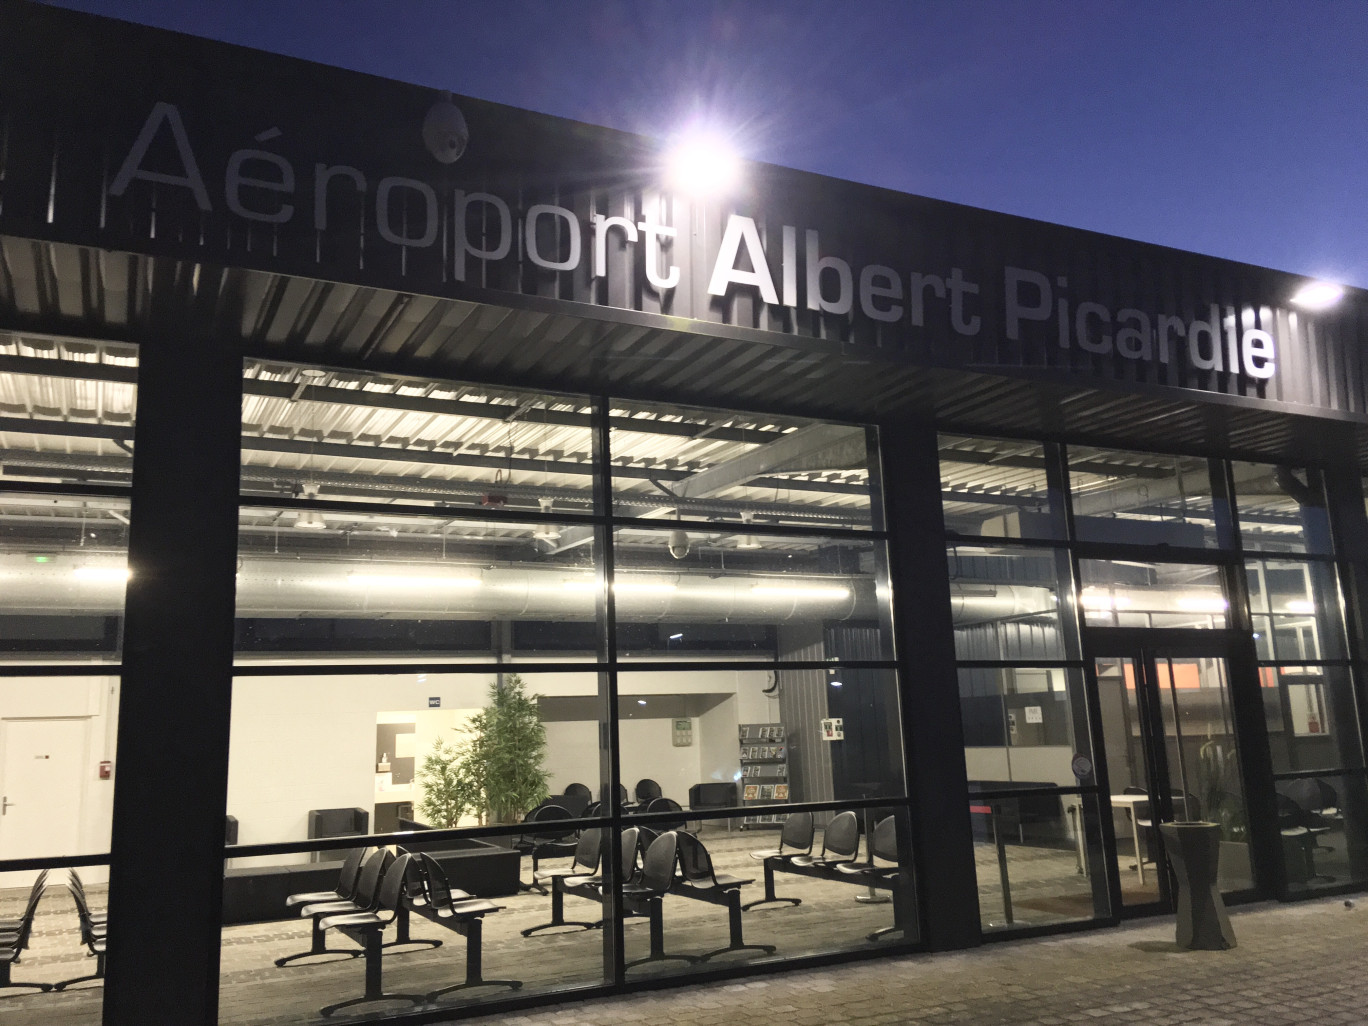  L'aéroport Albert-Picardie sera renommé pour être mieux identifié comme à proximité d'Amiens. ©Aletheia Press/ DLP